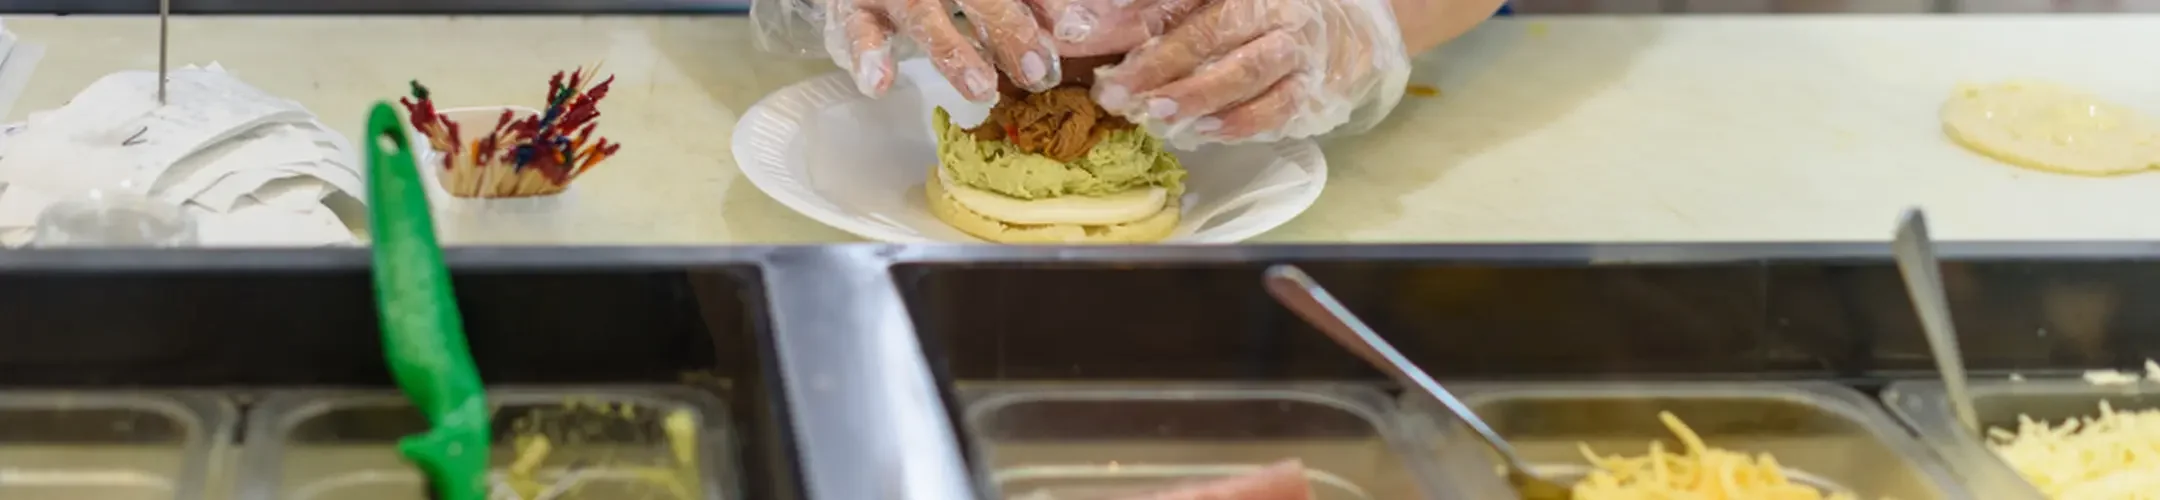 Saladette auf der ein Burger zubereitet werden